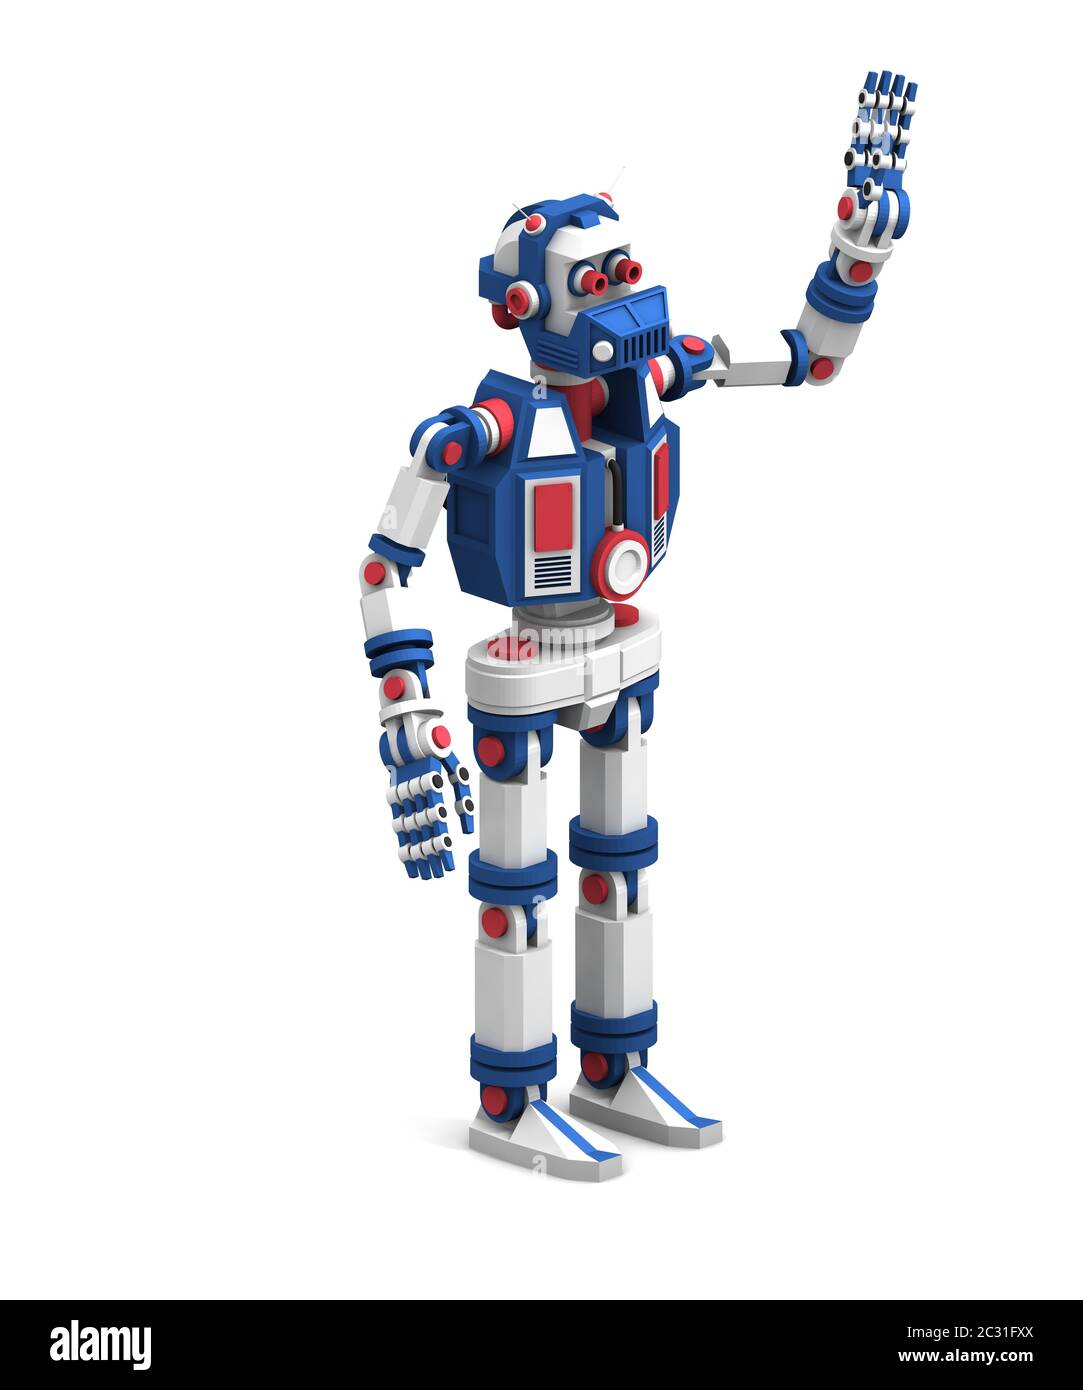 el robot, excepcionalmente detallado, se pone de pie y saluda con la mano agitada Foto de stock